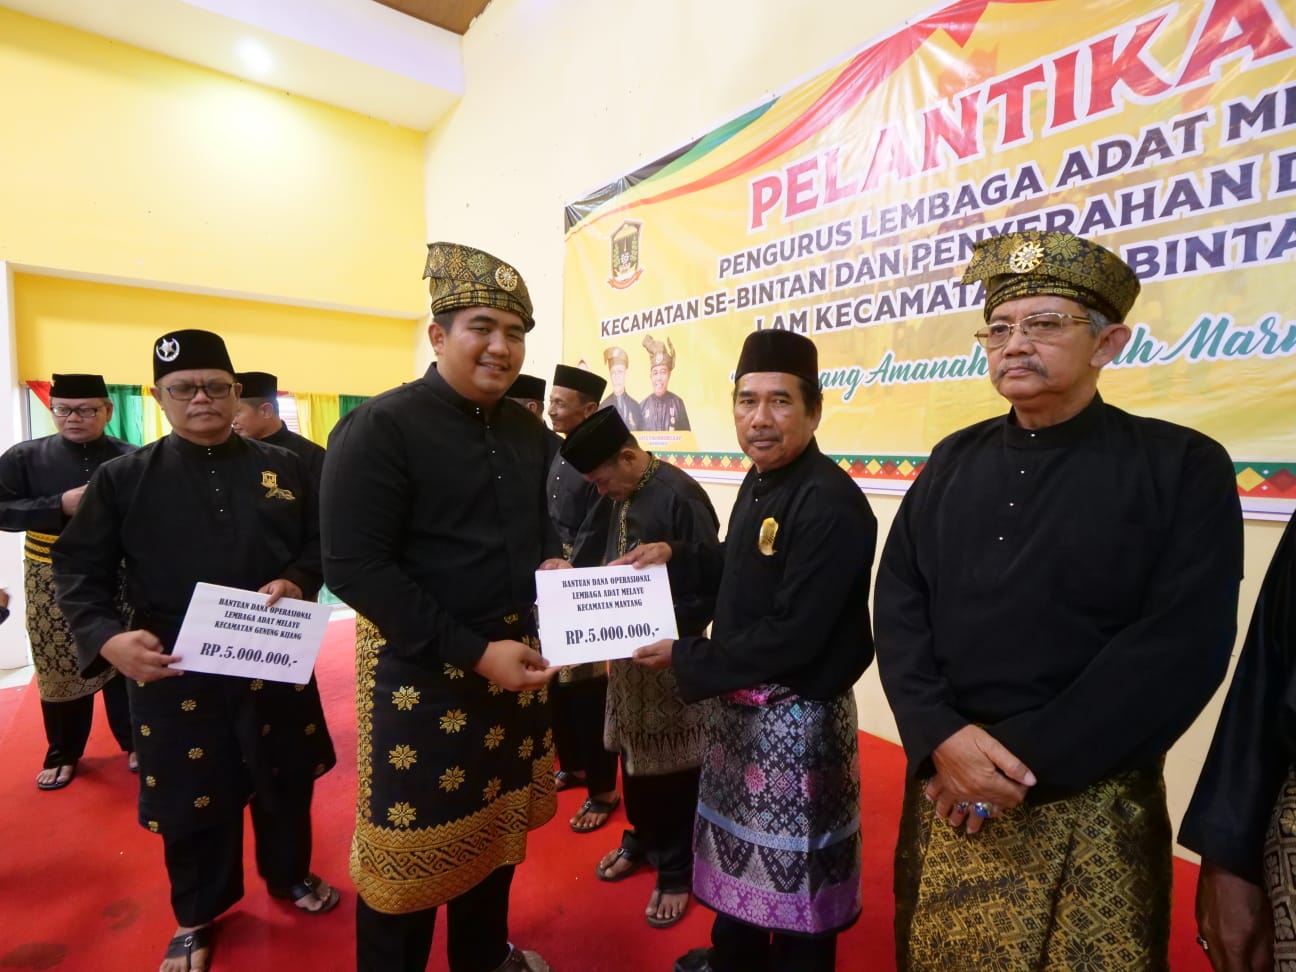 Bupati Bintan : Mari Kita Jaga Adat dan Martabat Melayu Bumi Segantang Lada